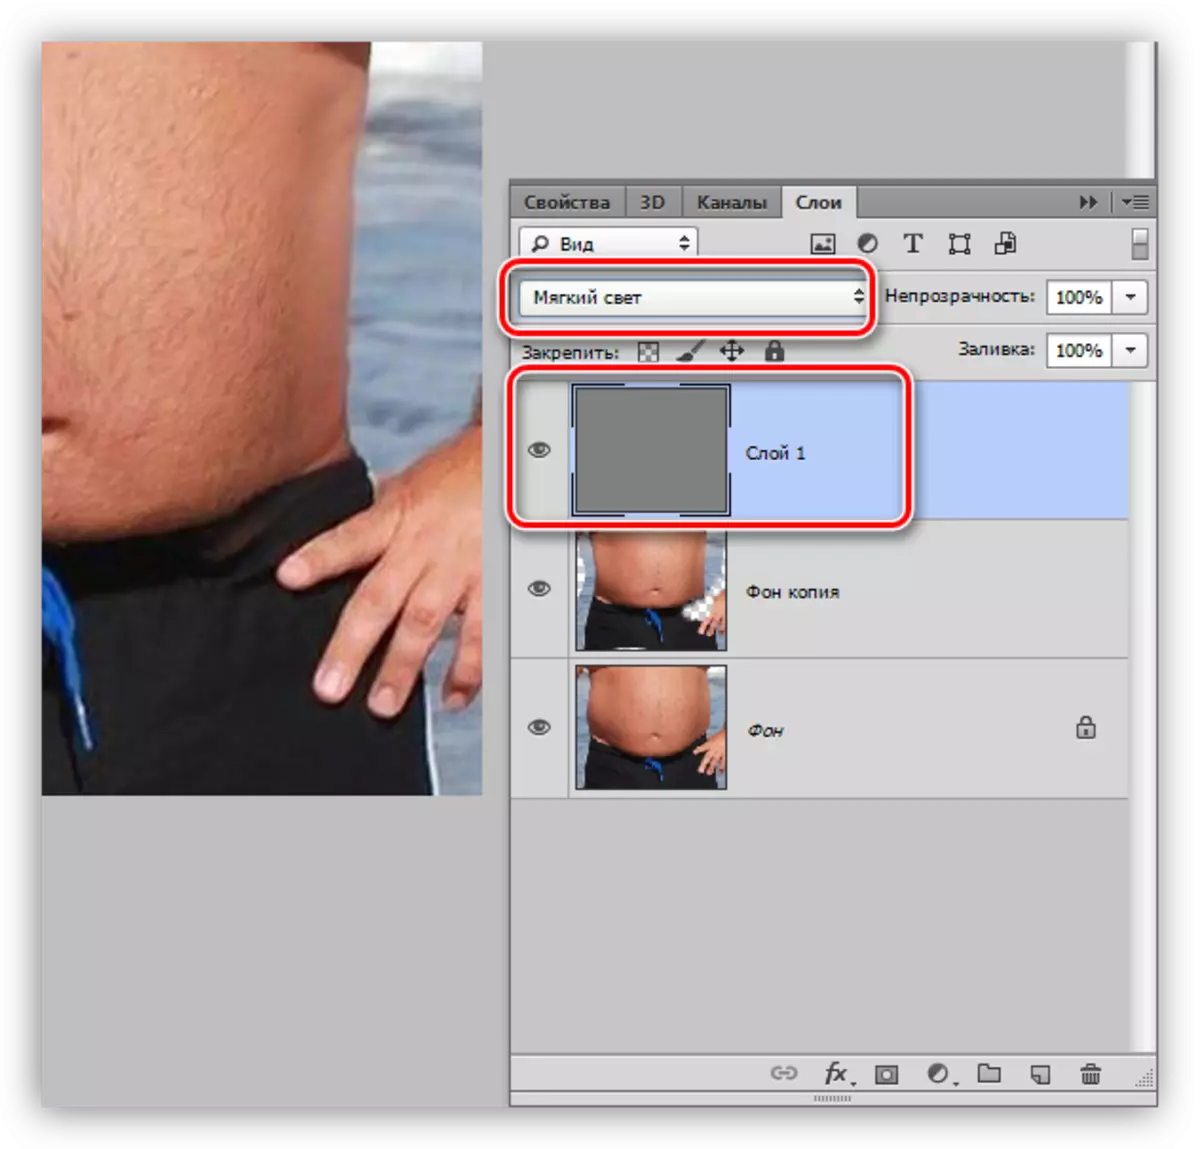 Zmiana trybu do nałożenia dla warstwy z wylewającym szarym, gdy brzuch jest elegancki w Photoshopie